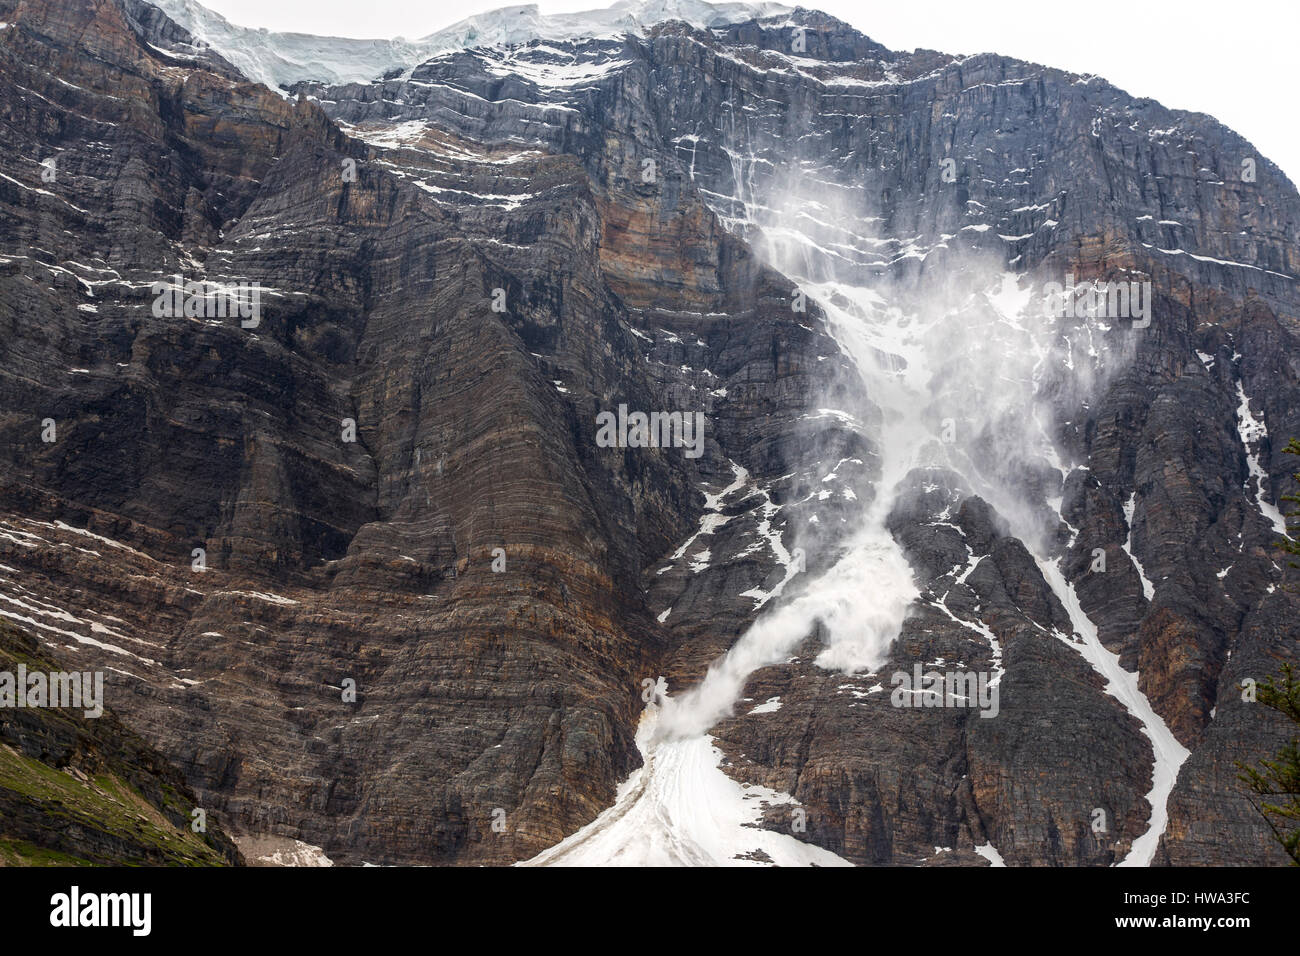 Avalanche de fonte des neiges printanière. Paysage de falaises rocheuses sauvages, pic du Temple Mountain Parc national Banff Alberta Canada Banque D'Images